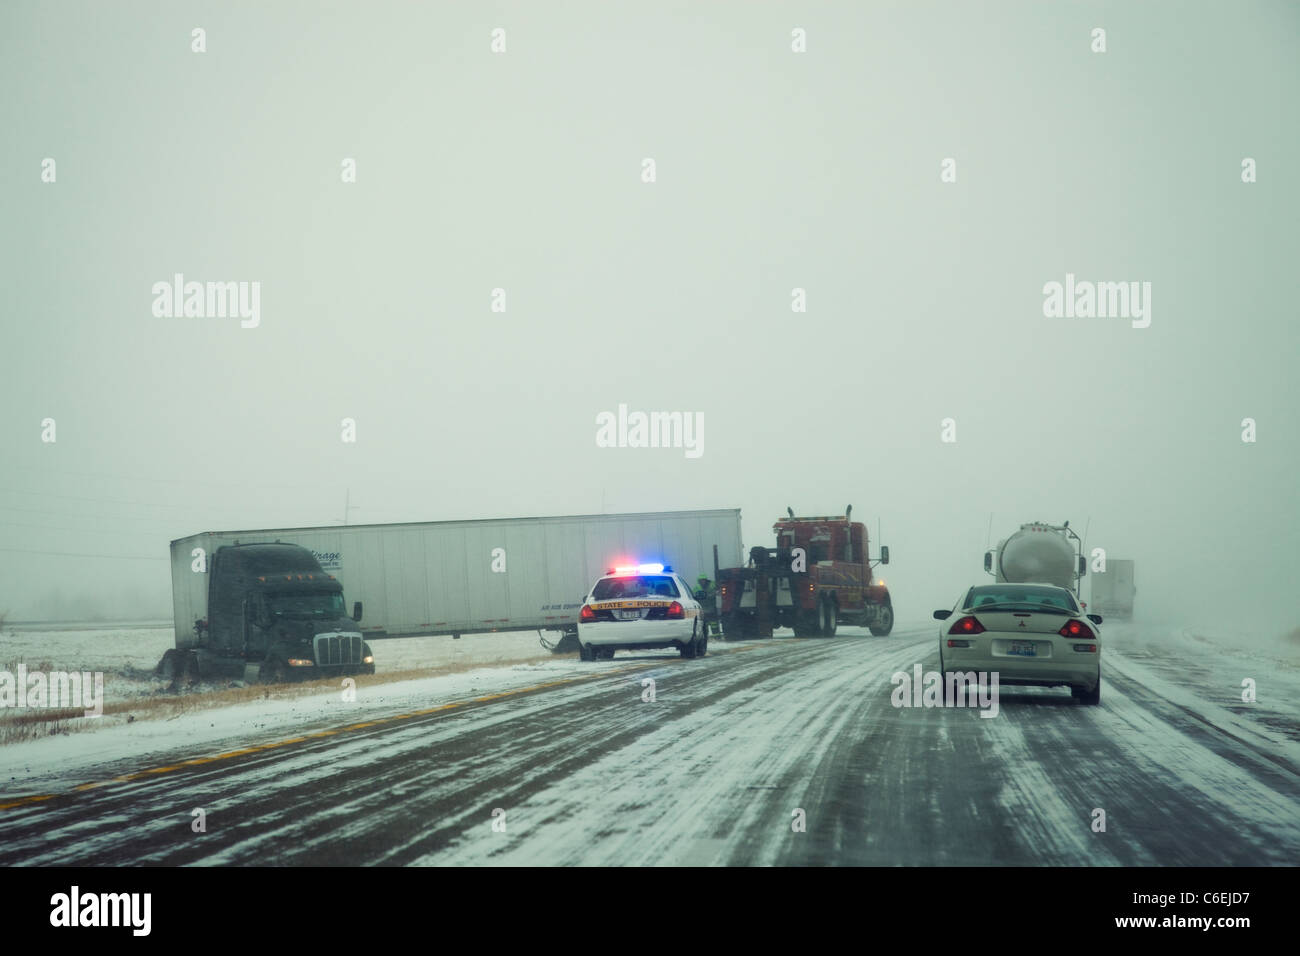 Stati Uniti d'America, Illinois, Springfield, Semi carrello incidente sull'autostrada durante la tempesta Foto Stock